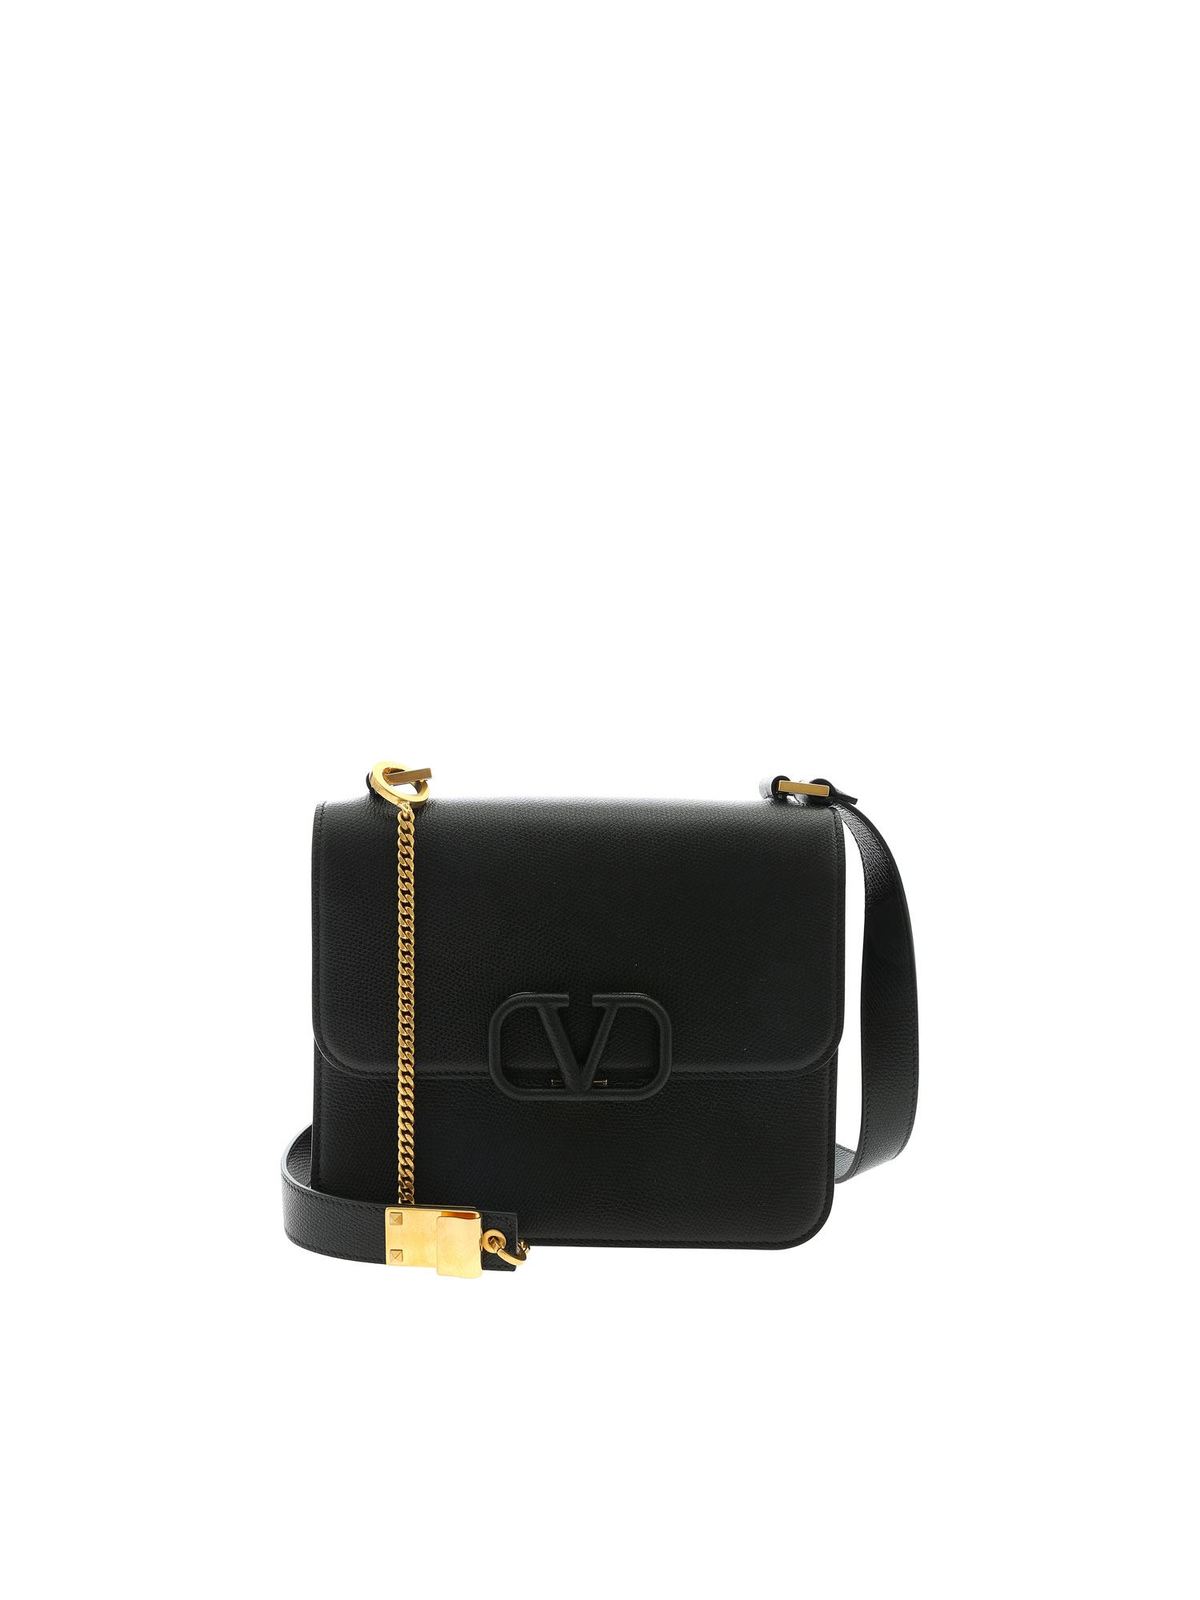 V Sling Leather Shoulder Bag in Black - Valentino Garavani